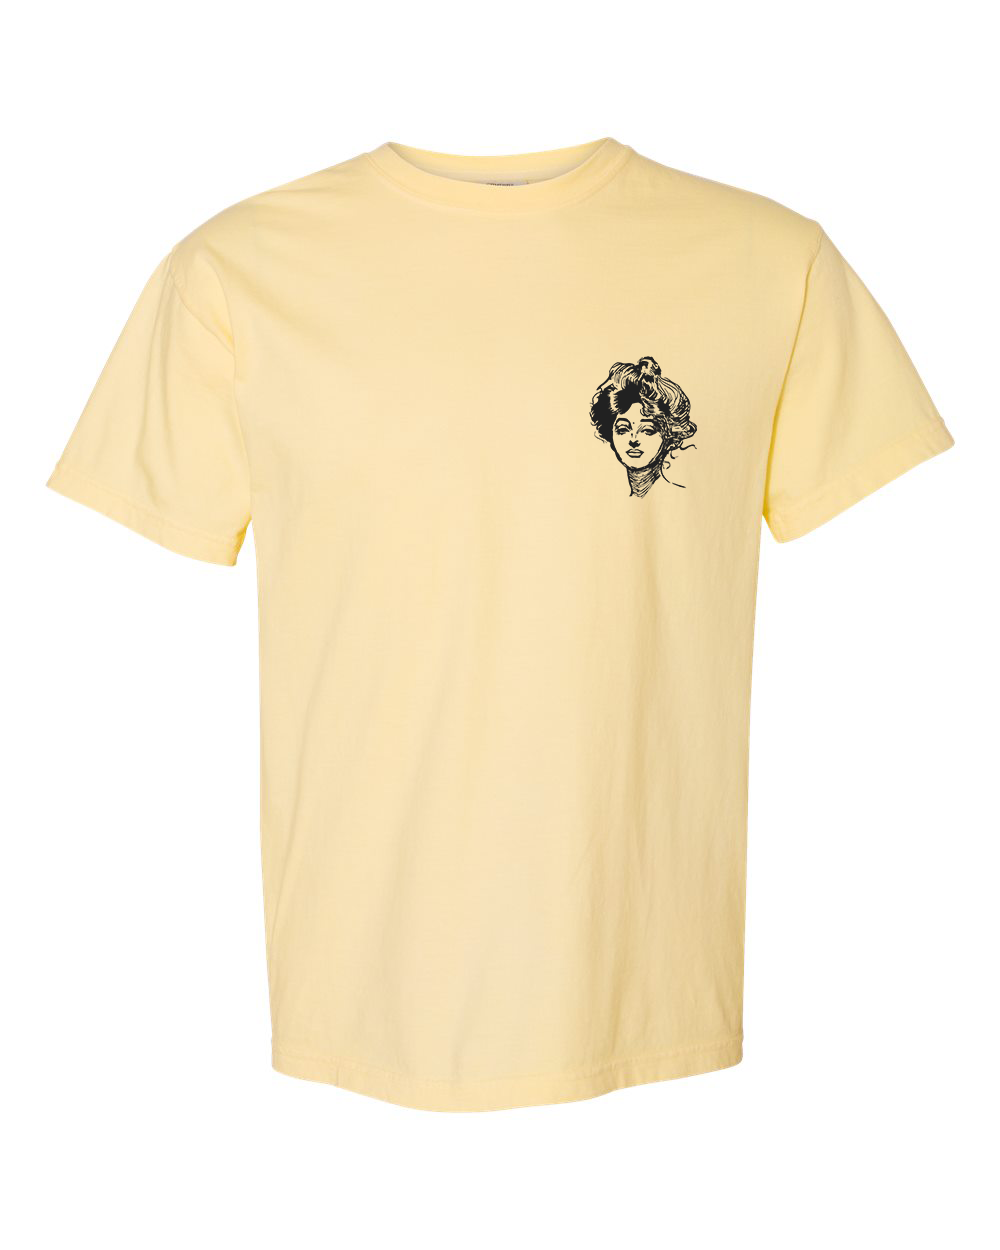 Gibson Girl unisex short sleeve t-shirt